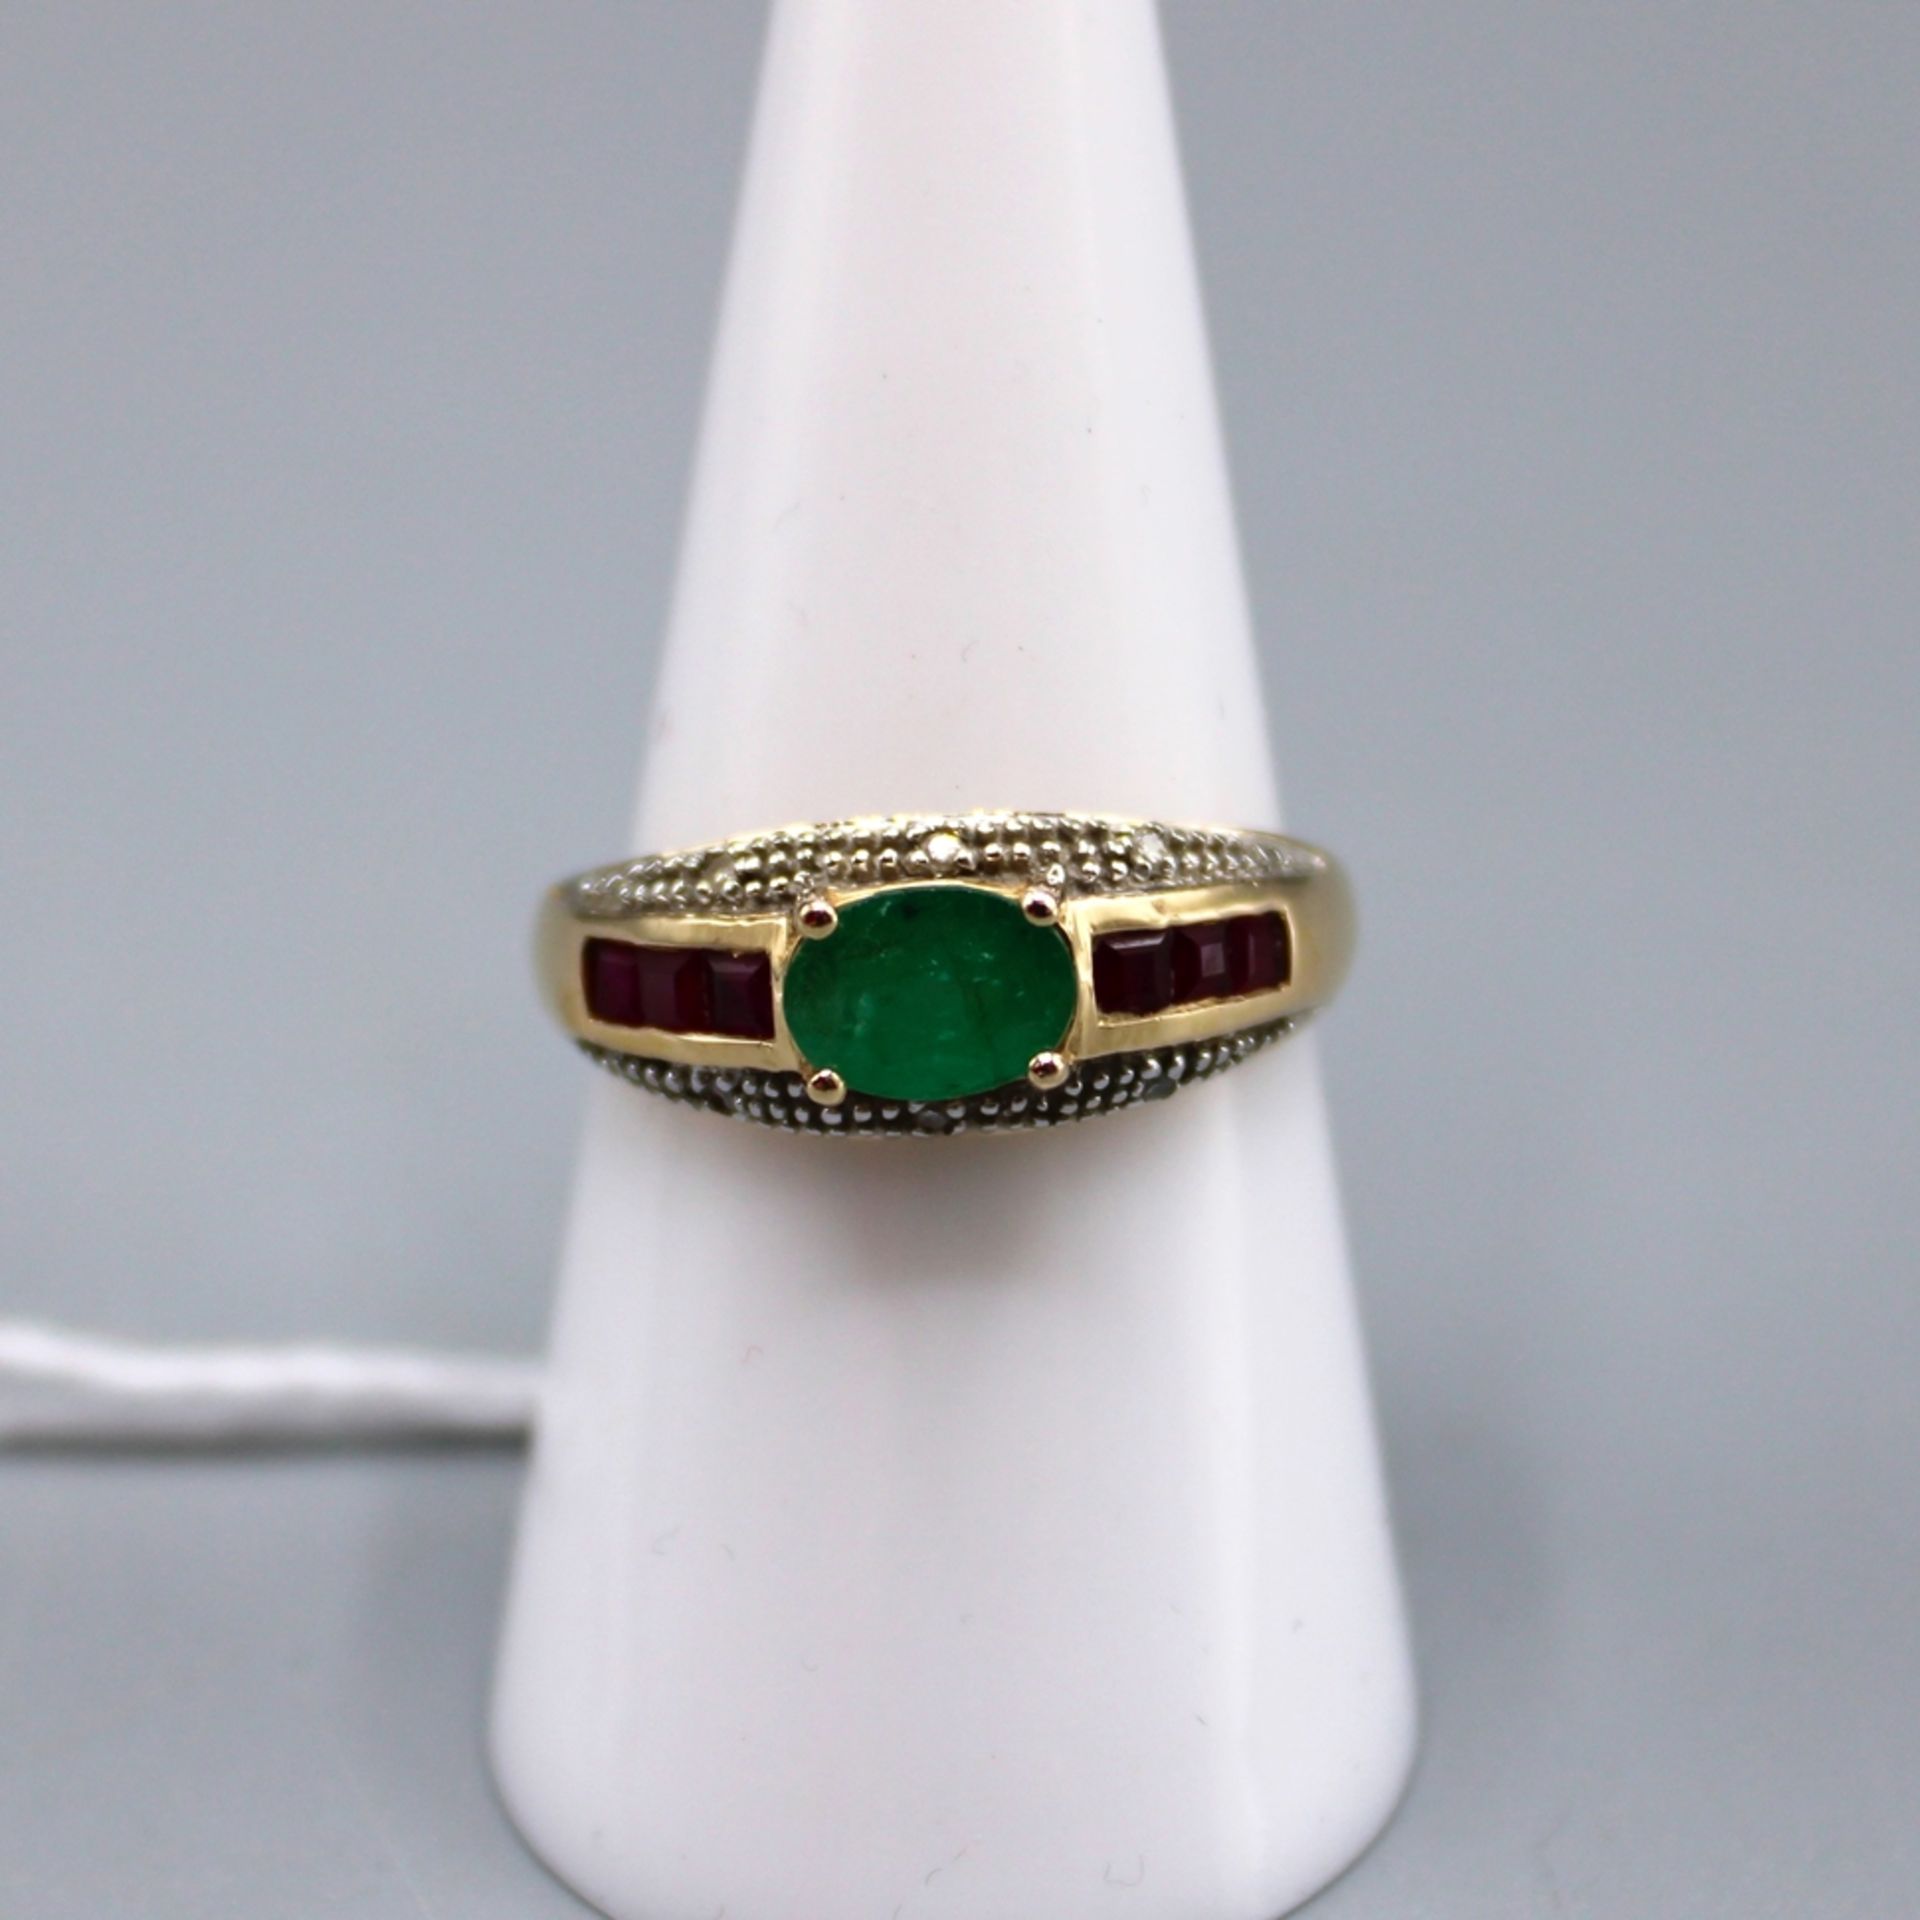 Smaragd Rubin Diamant Goldring 585, Smaragd ca. 6,6 x 4,8 mm, seitl. 6 quadratische Rubine, 6 kl. D